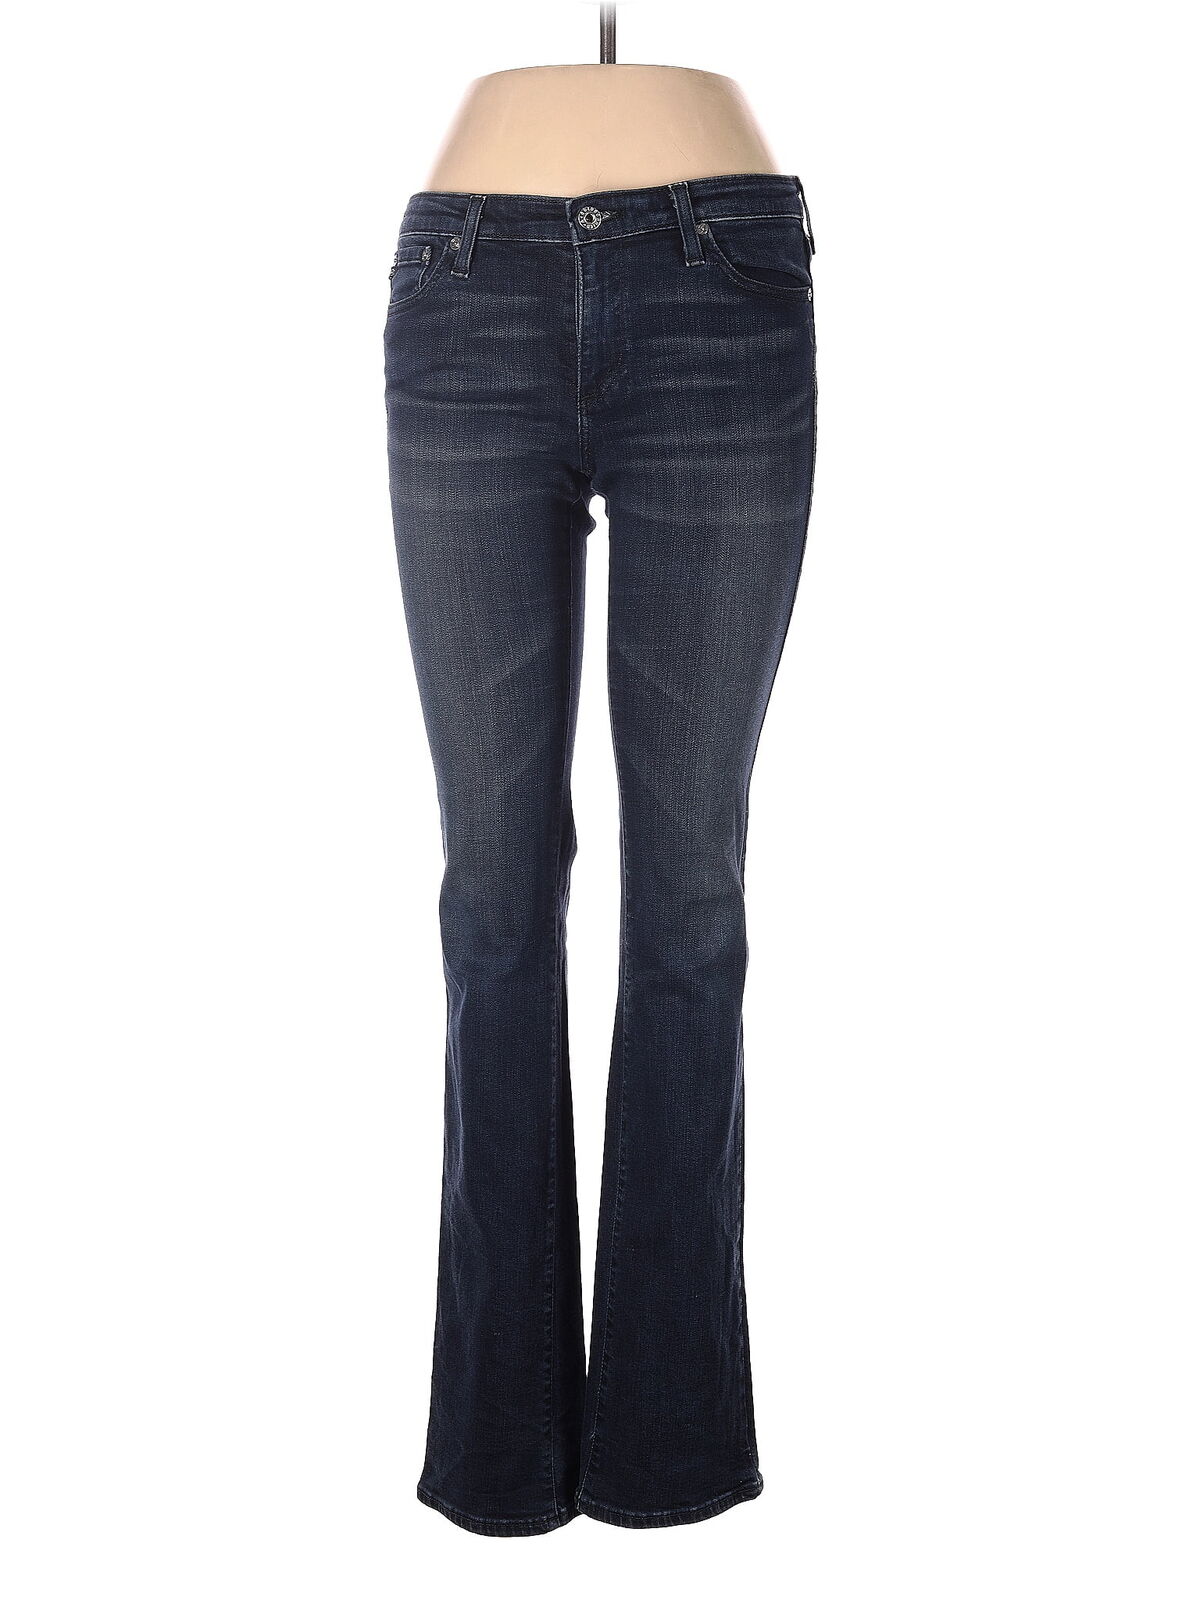 Adriano Goldschmied Women Blue Jeans 29W - image 1